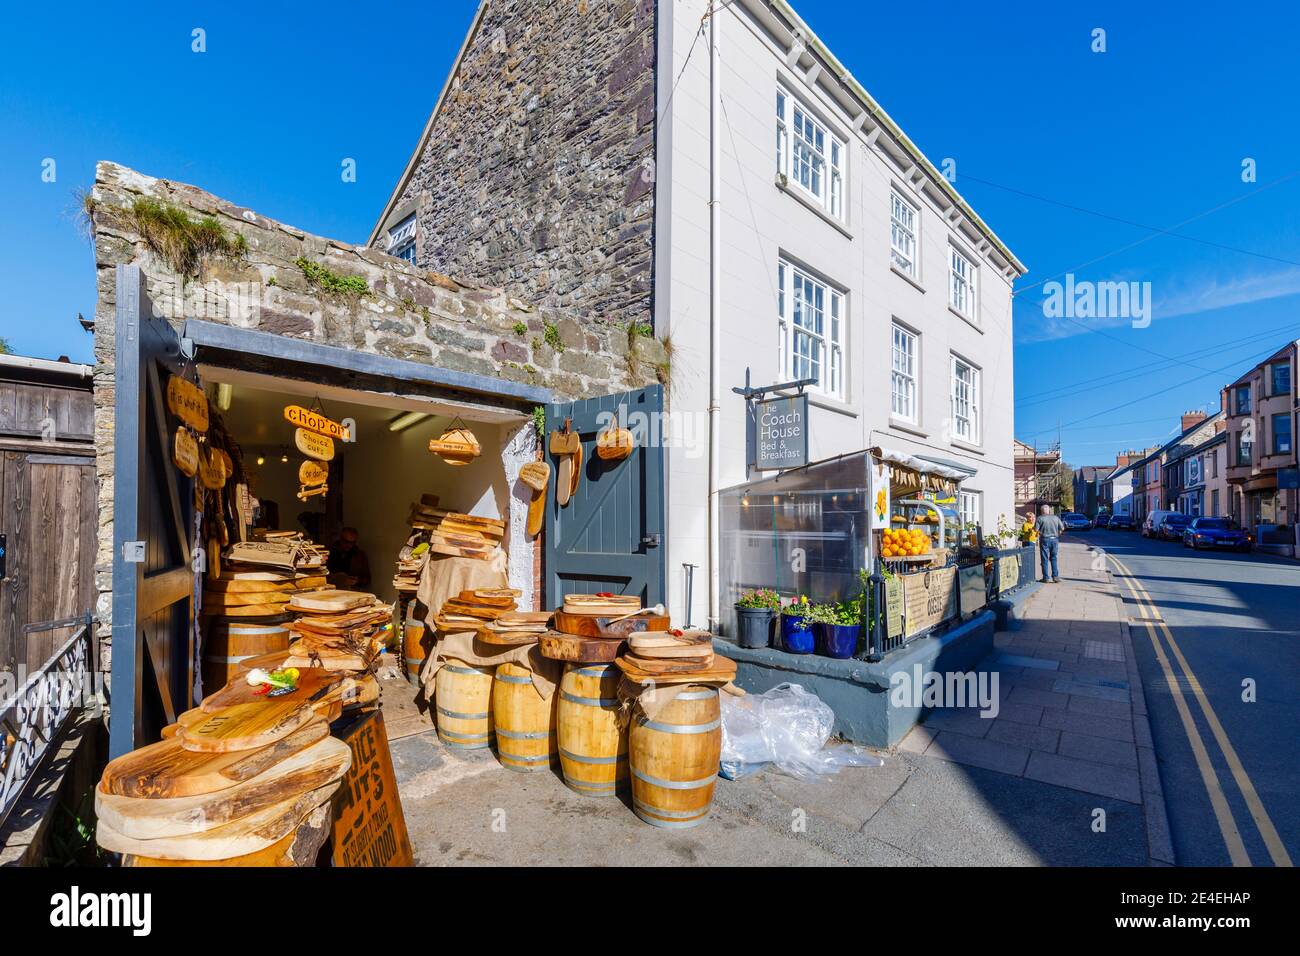 Ein örtliches Holzschnitzergeschäft, das touristische Souvenirs in der Hauptstraße von St. David's, einer kleinen Domstadt in Pembrokeshire, Südwesten von Wales, verkauft Stockfoto